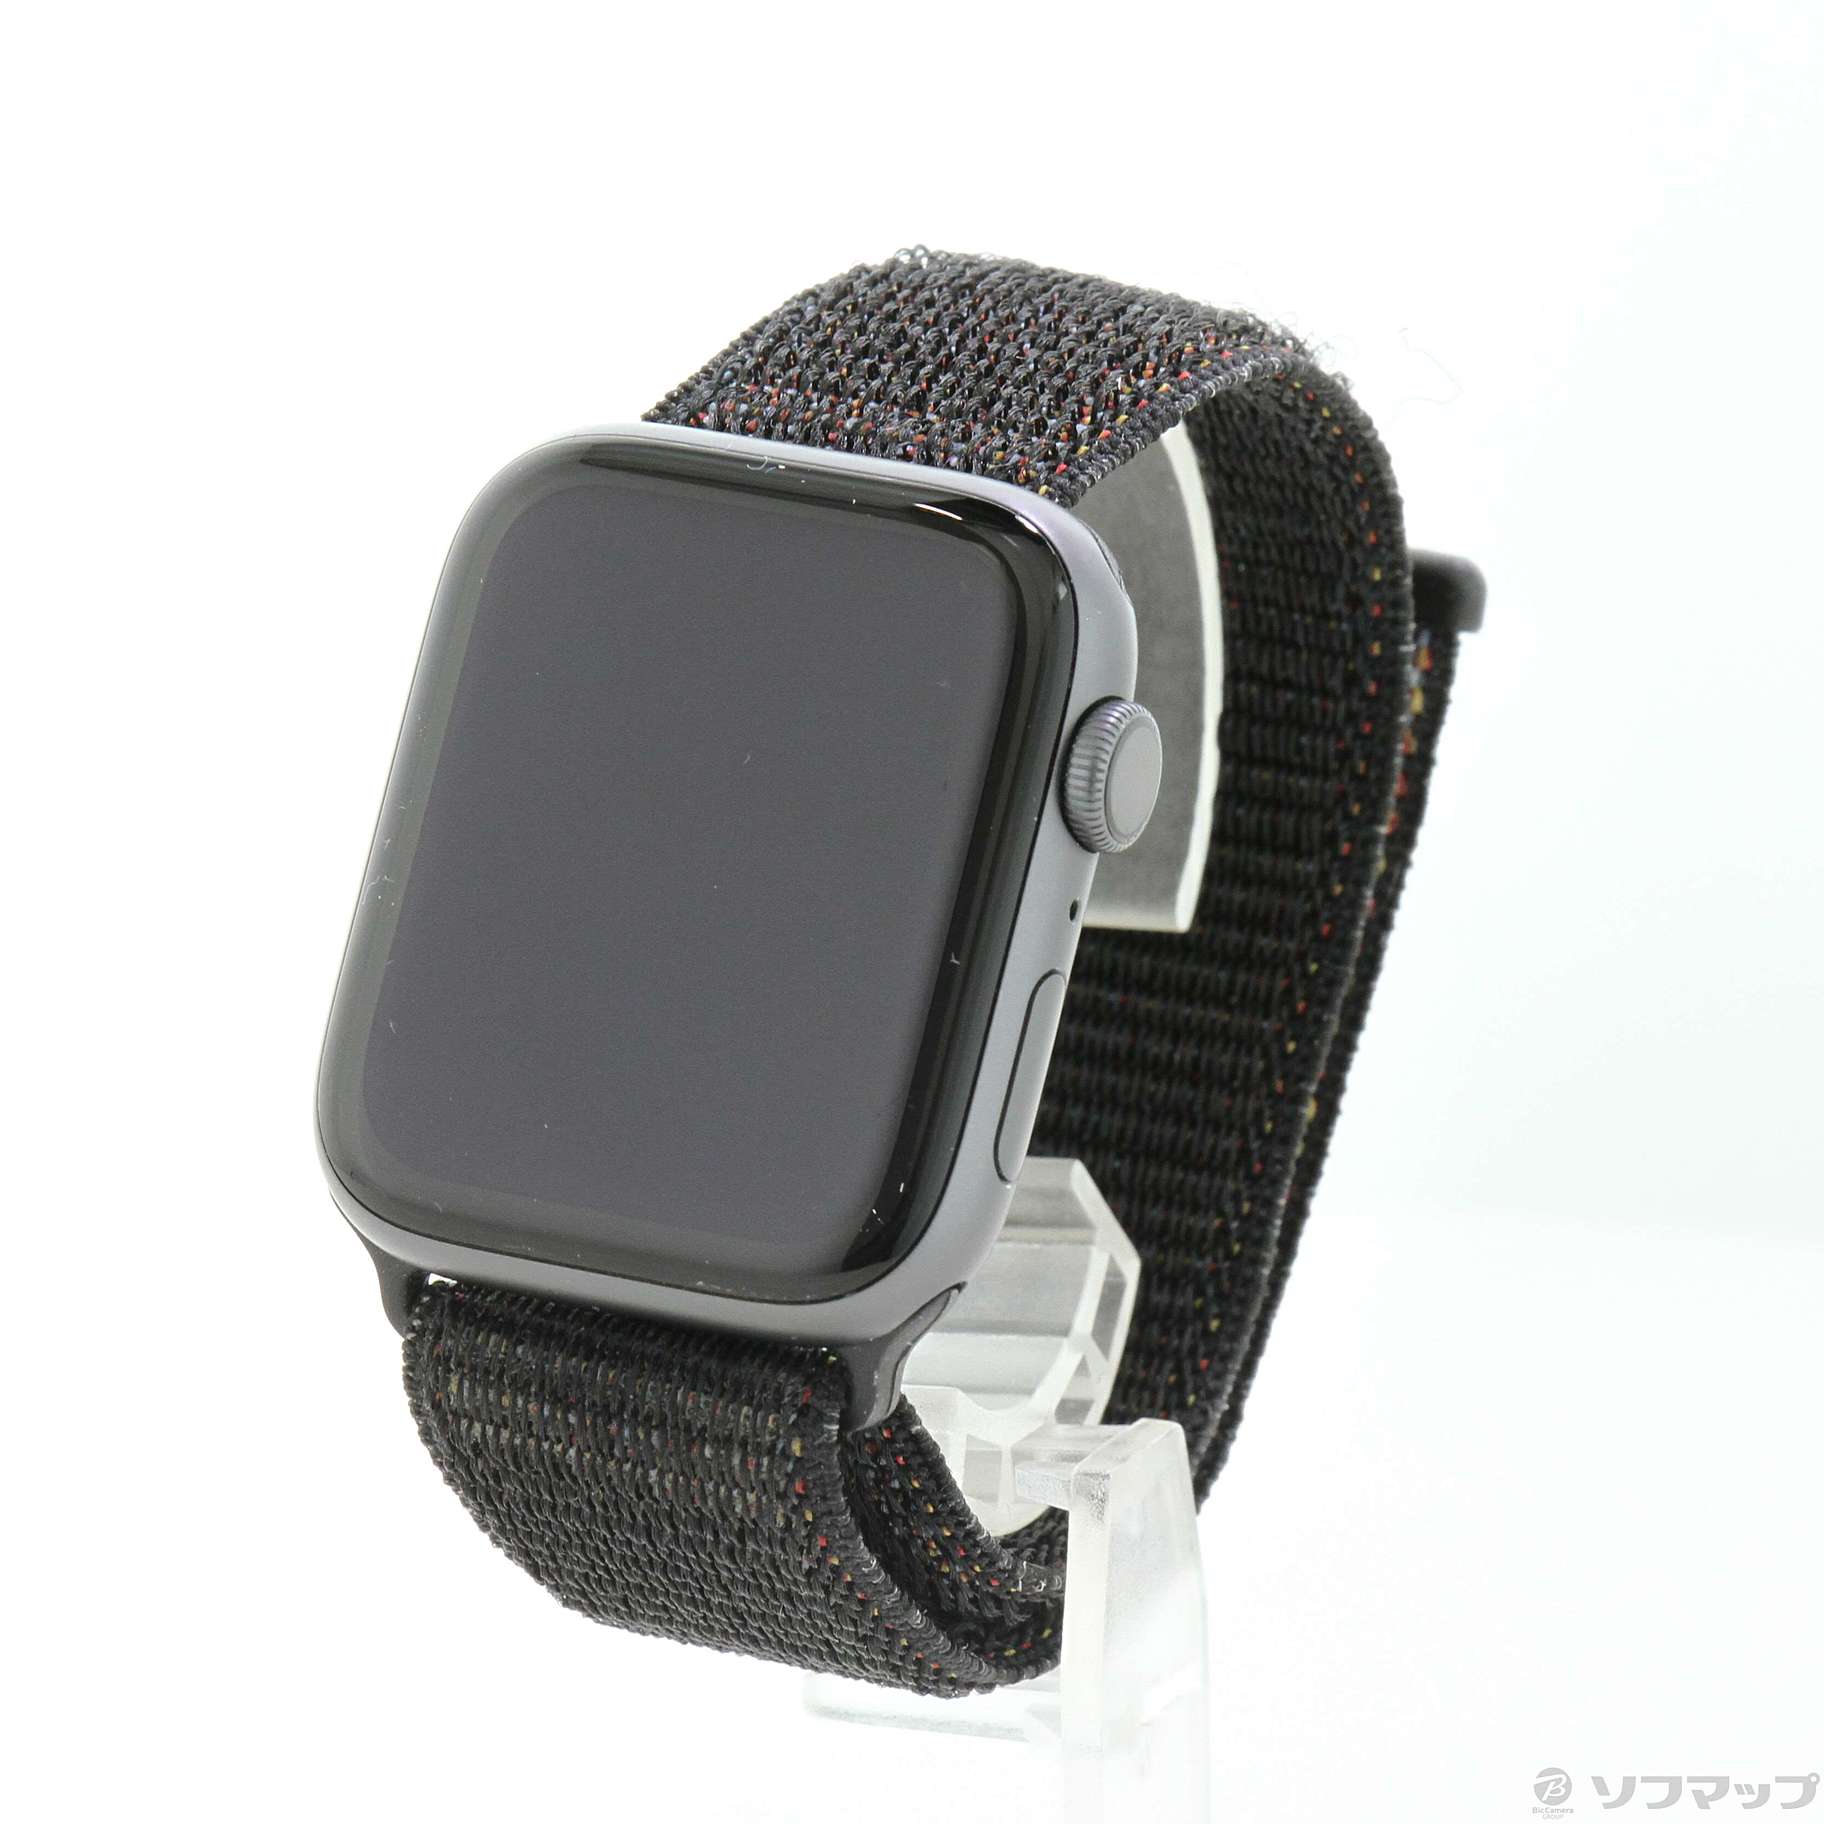 Apple Watch SE 44mmスペースグレイアルミニウムケースとブラッ… www